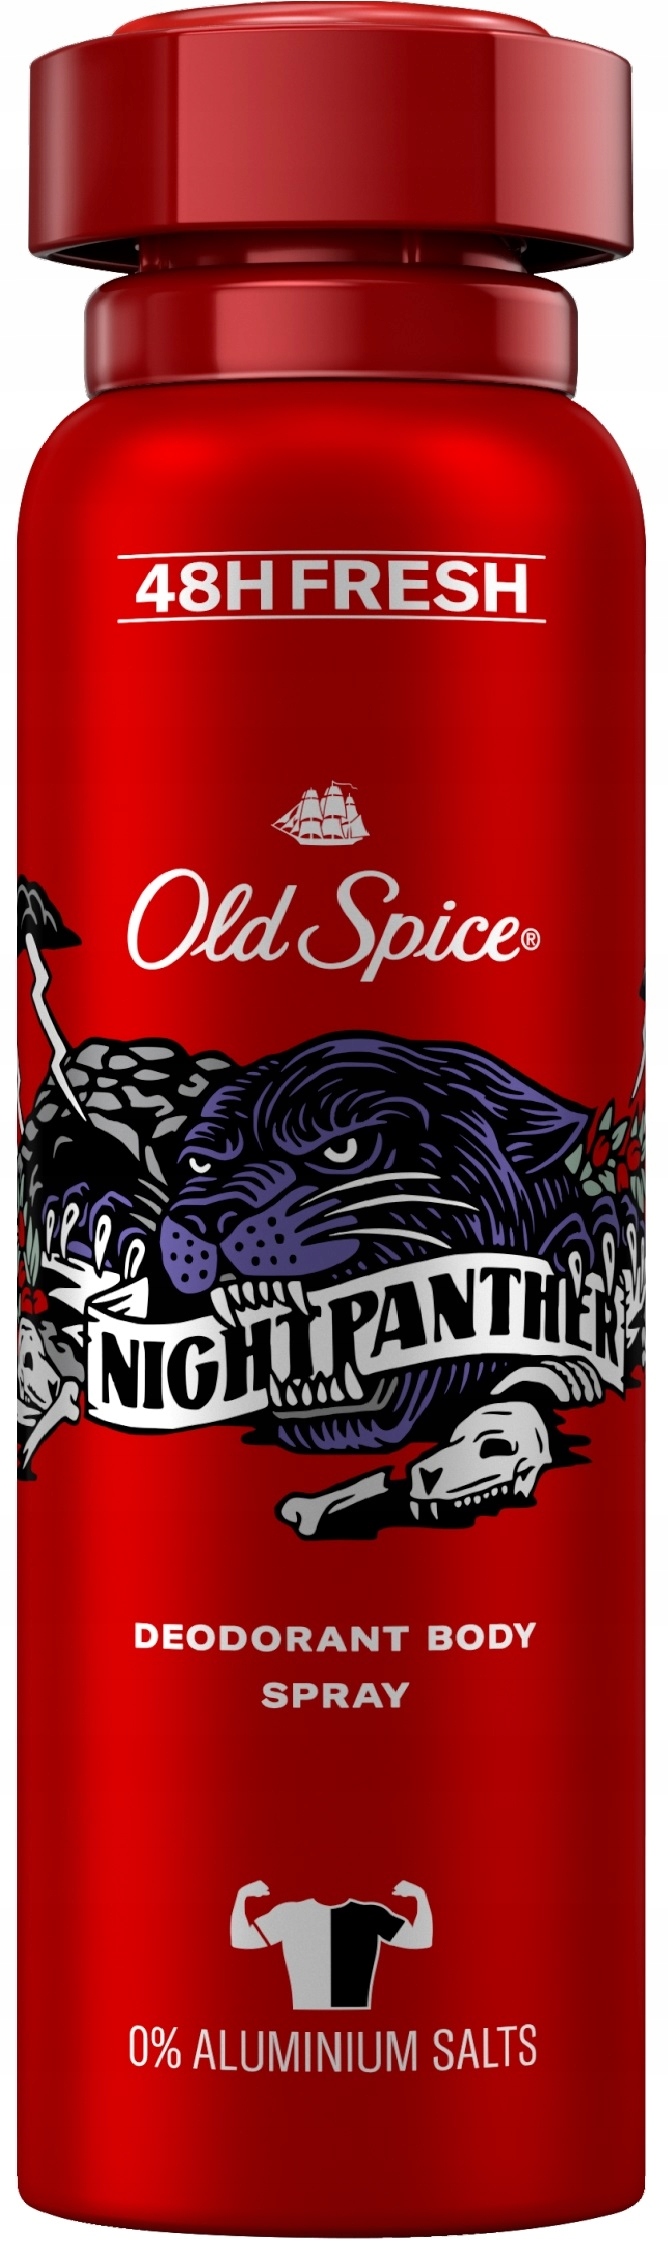 Old Spice Night Panther dezodorant v spreji pre mužov 150 ml